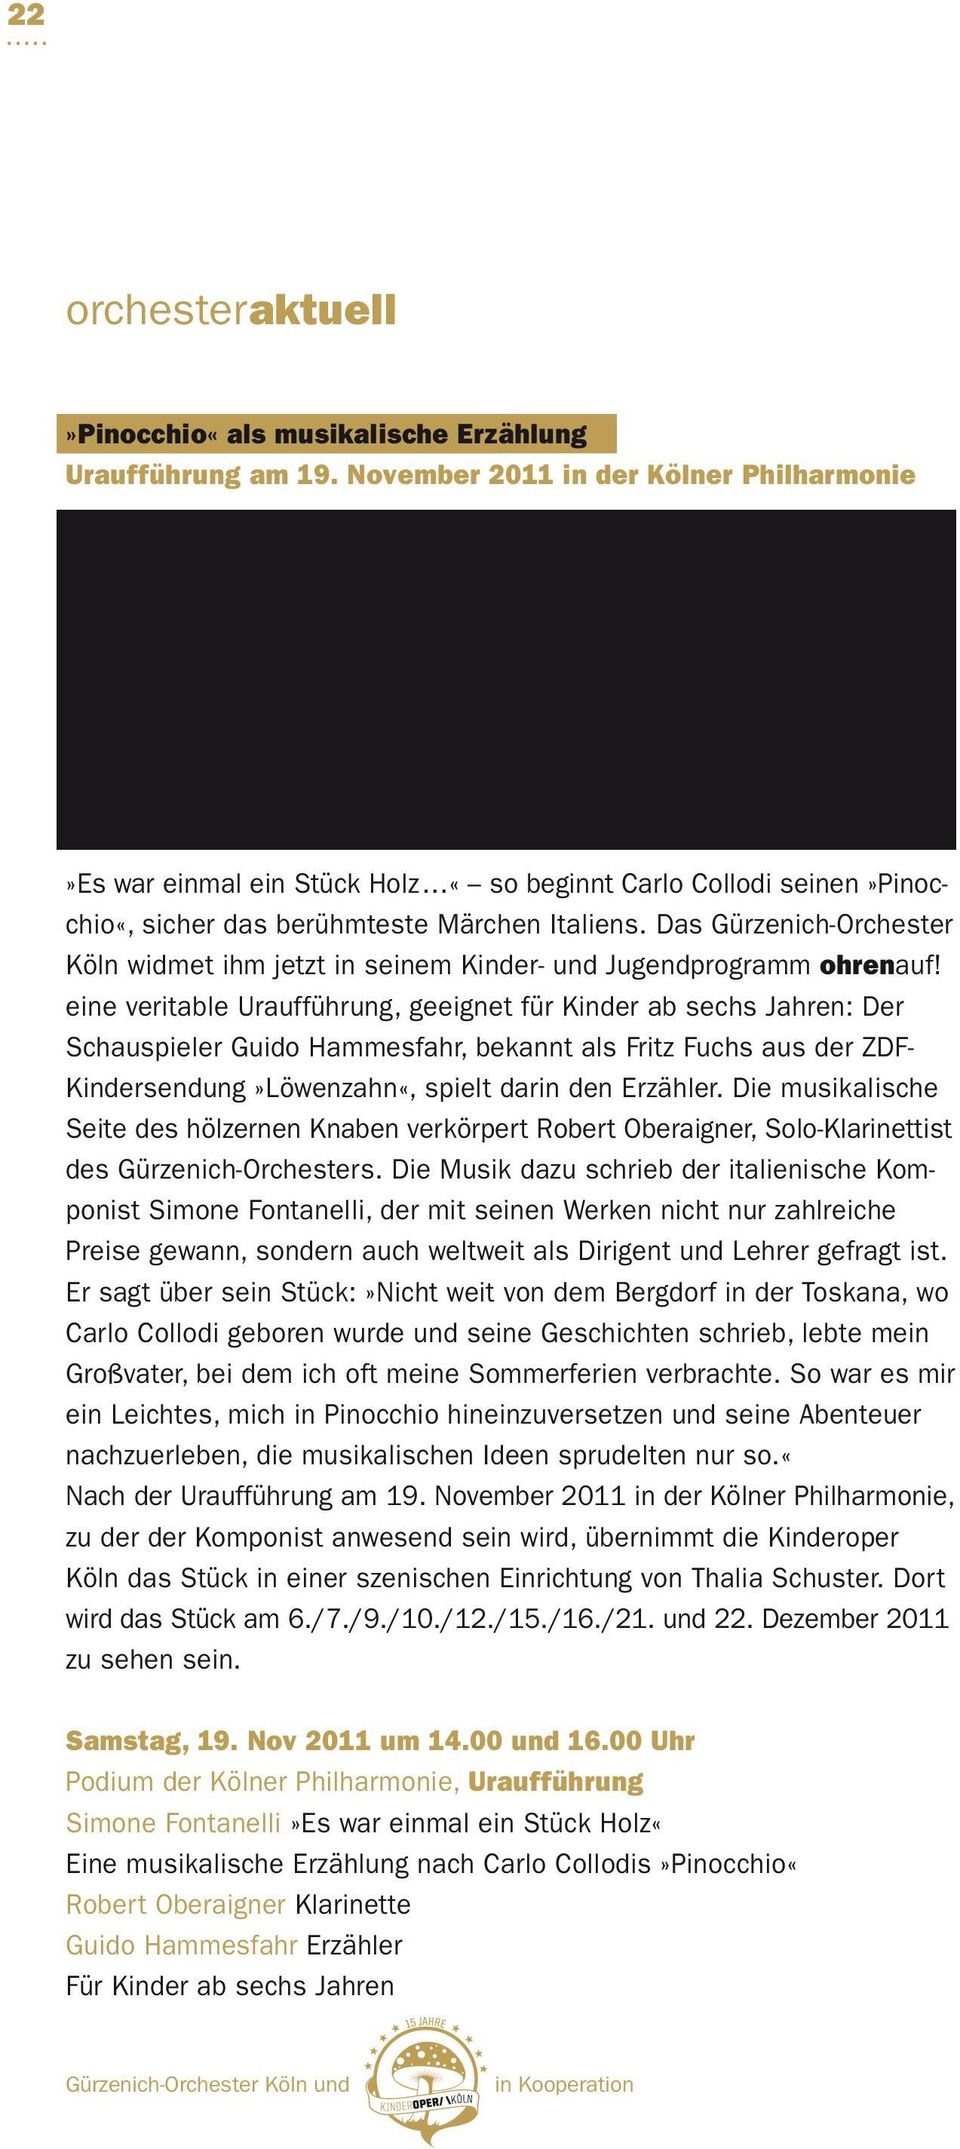 Das Gürzenich-Orchester Köln widmet ihm jetzt in seinem Kinder- und Jugendprogramm ohrenauf!